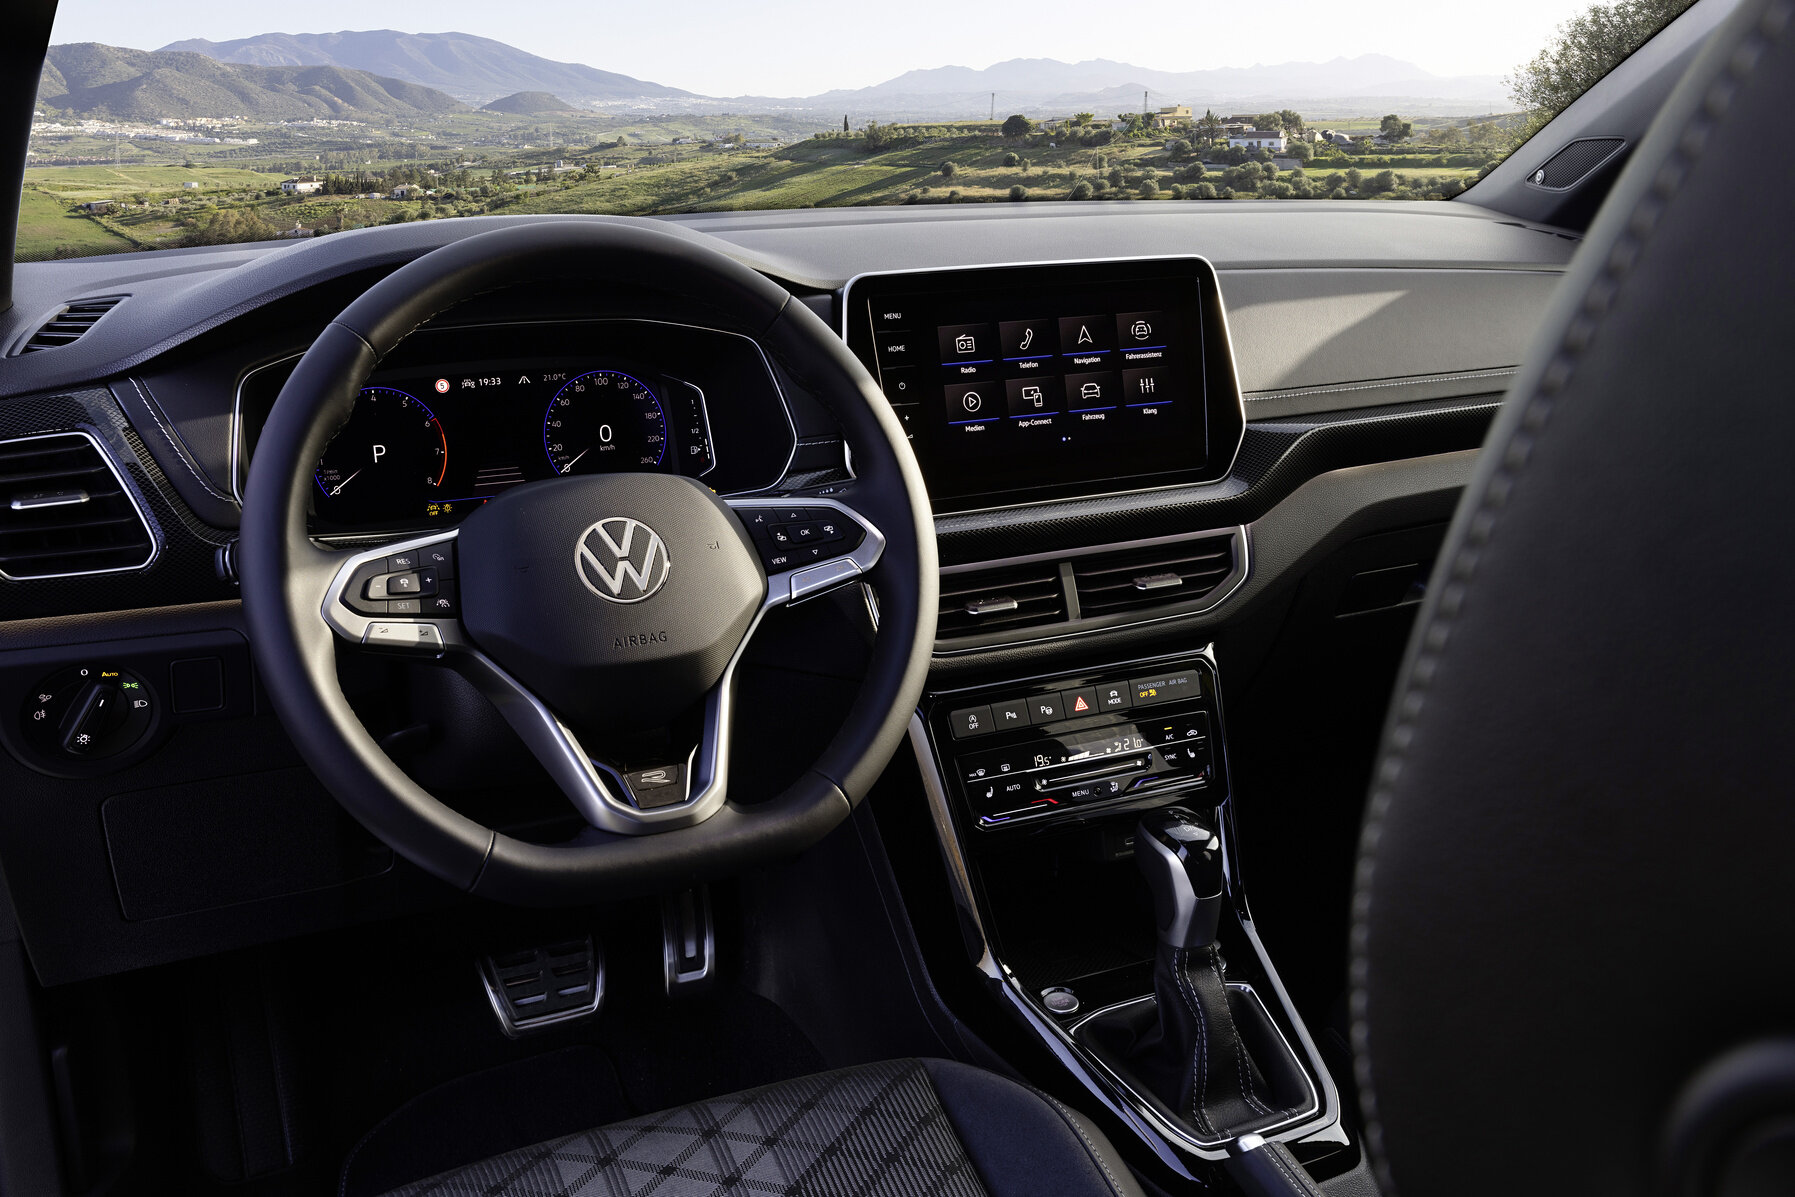 Volkswagen T-Cross po faceliftu, cena startuje na 520 tisících